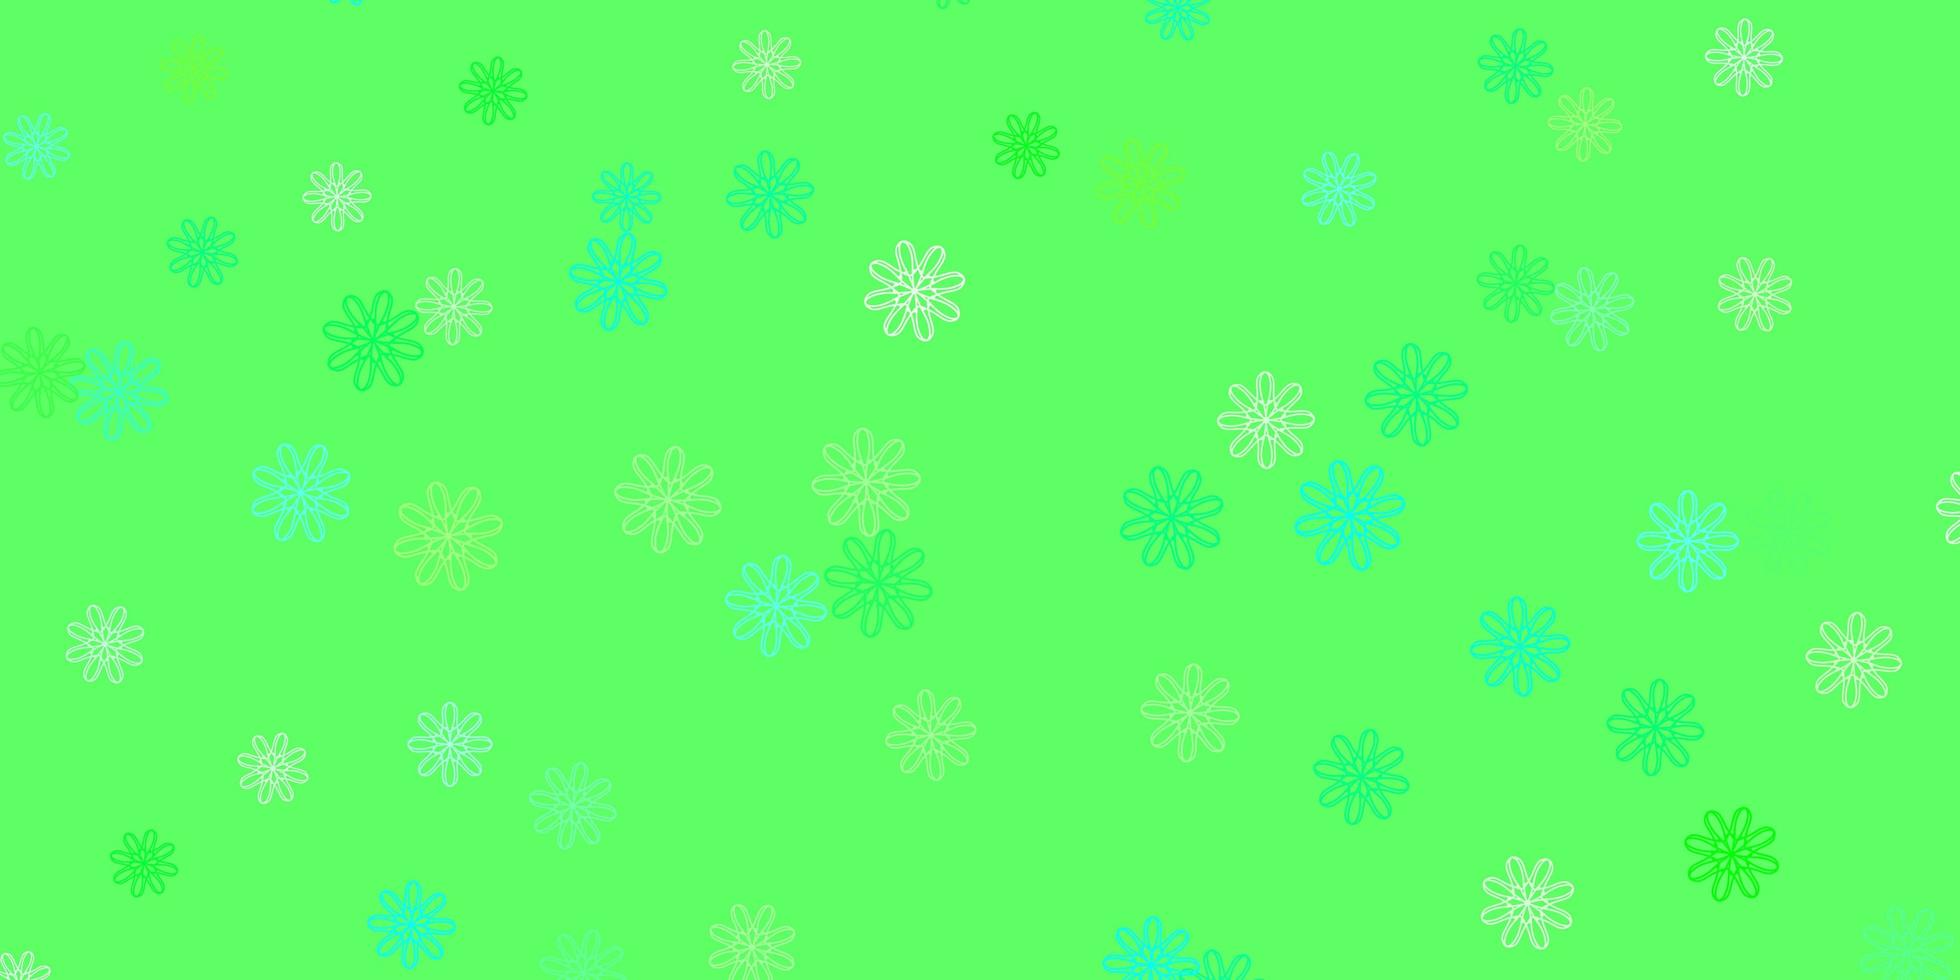 hellgrüne Vektor Gekritzel Textur mit Blumen.